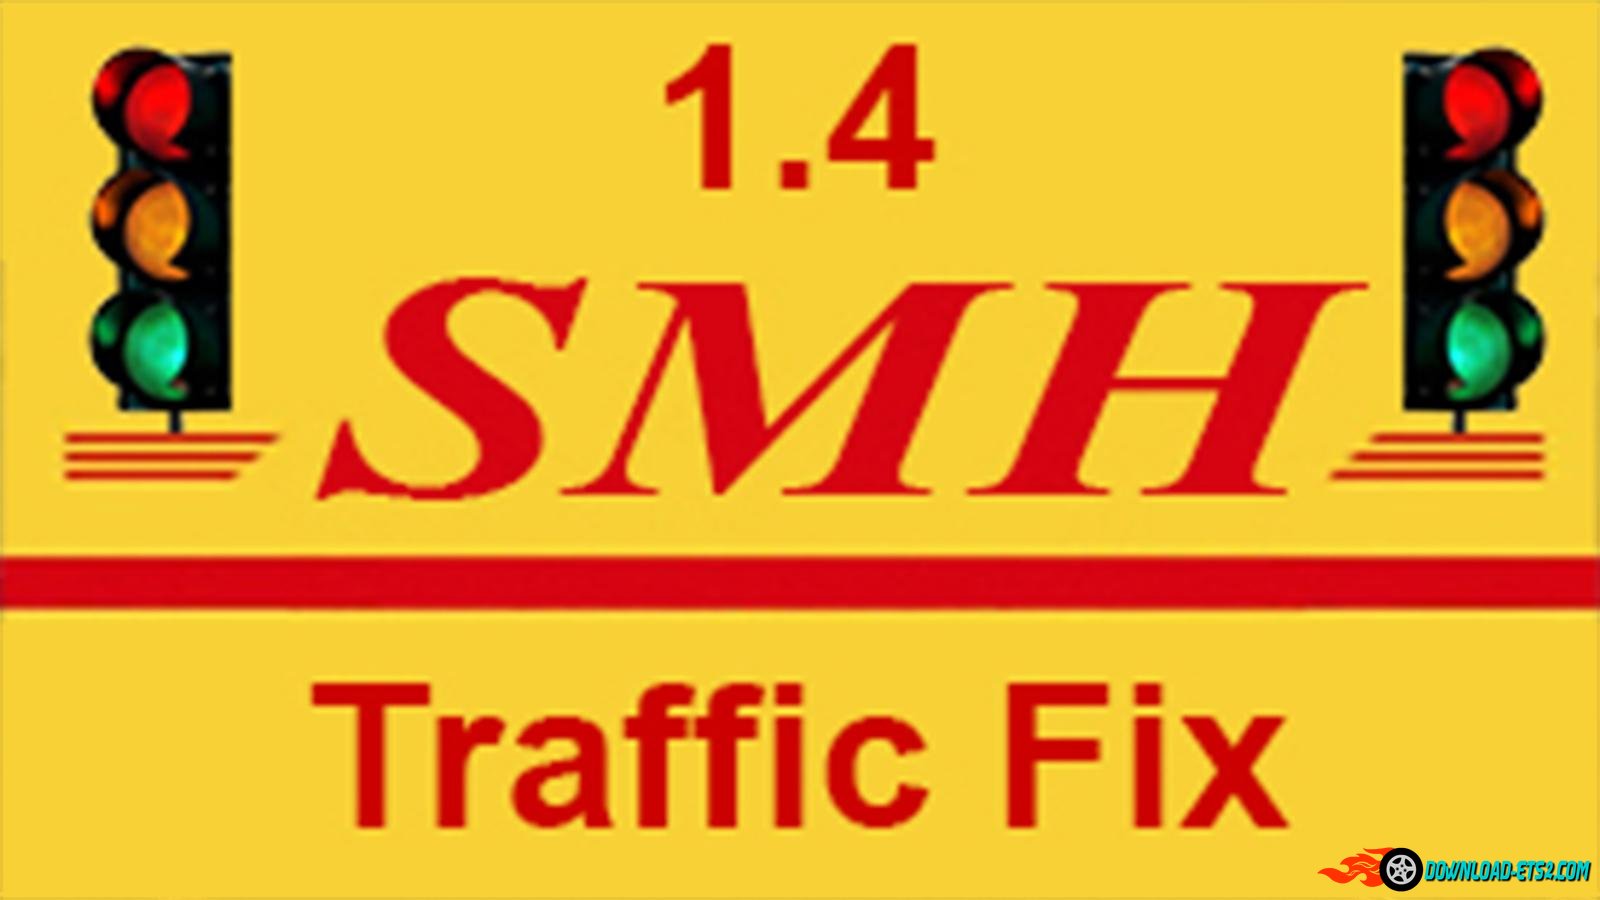 SmhKzl - Traffic Fix [1.21.x]